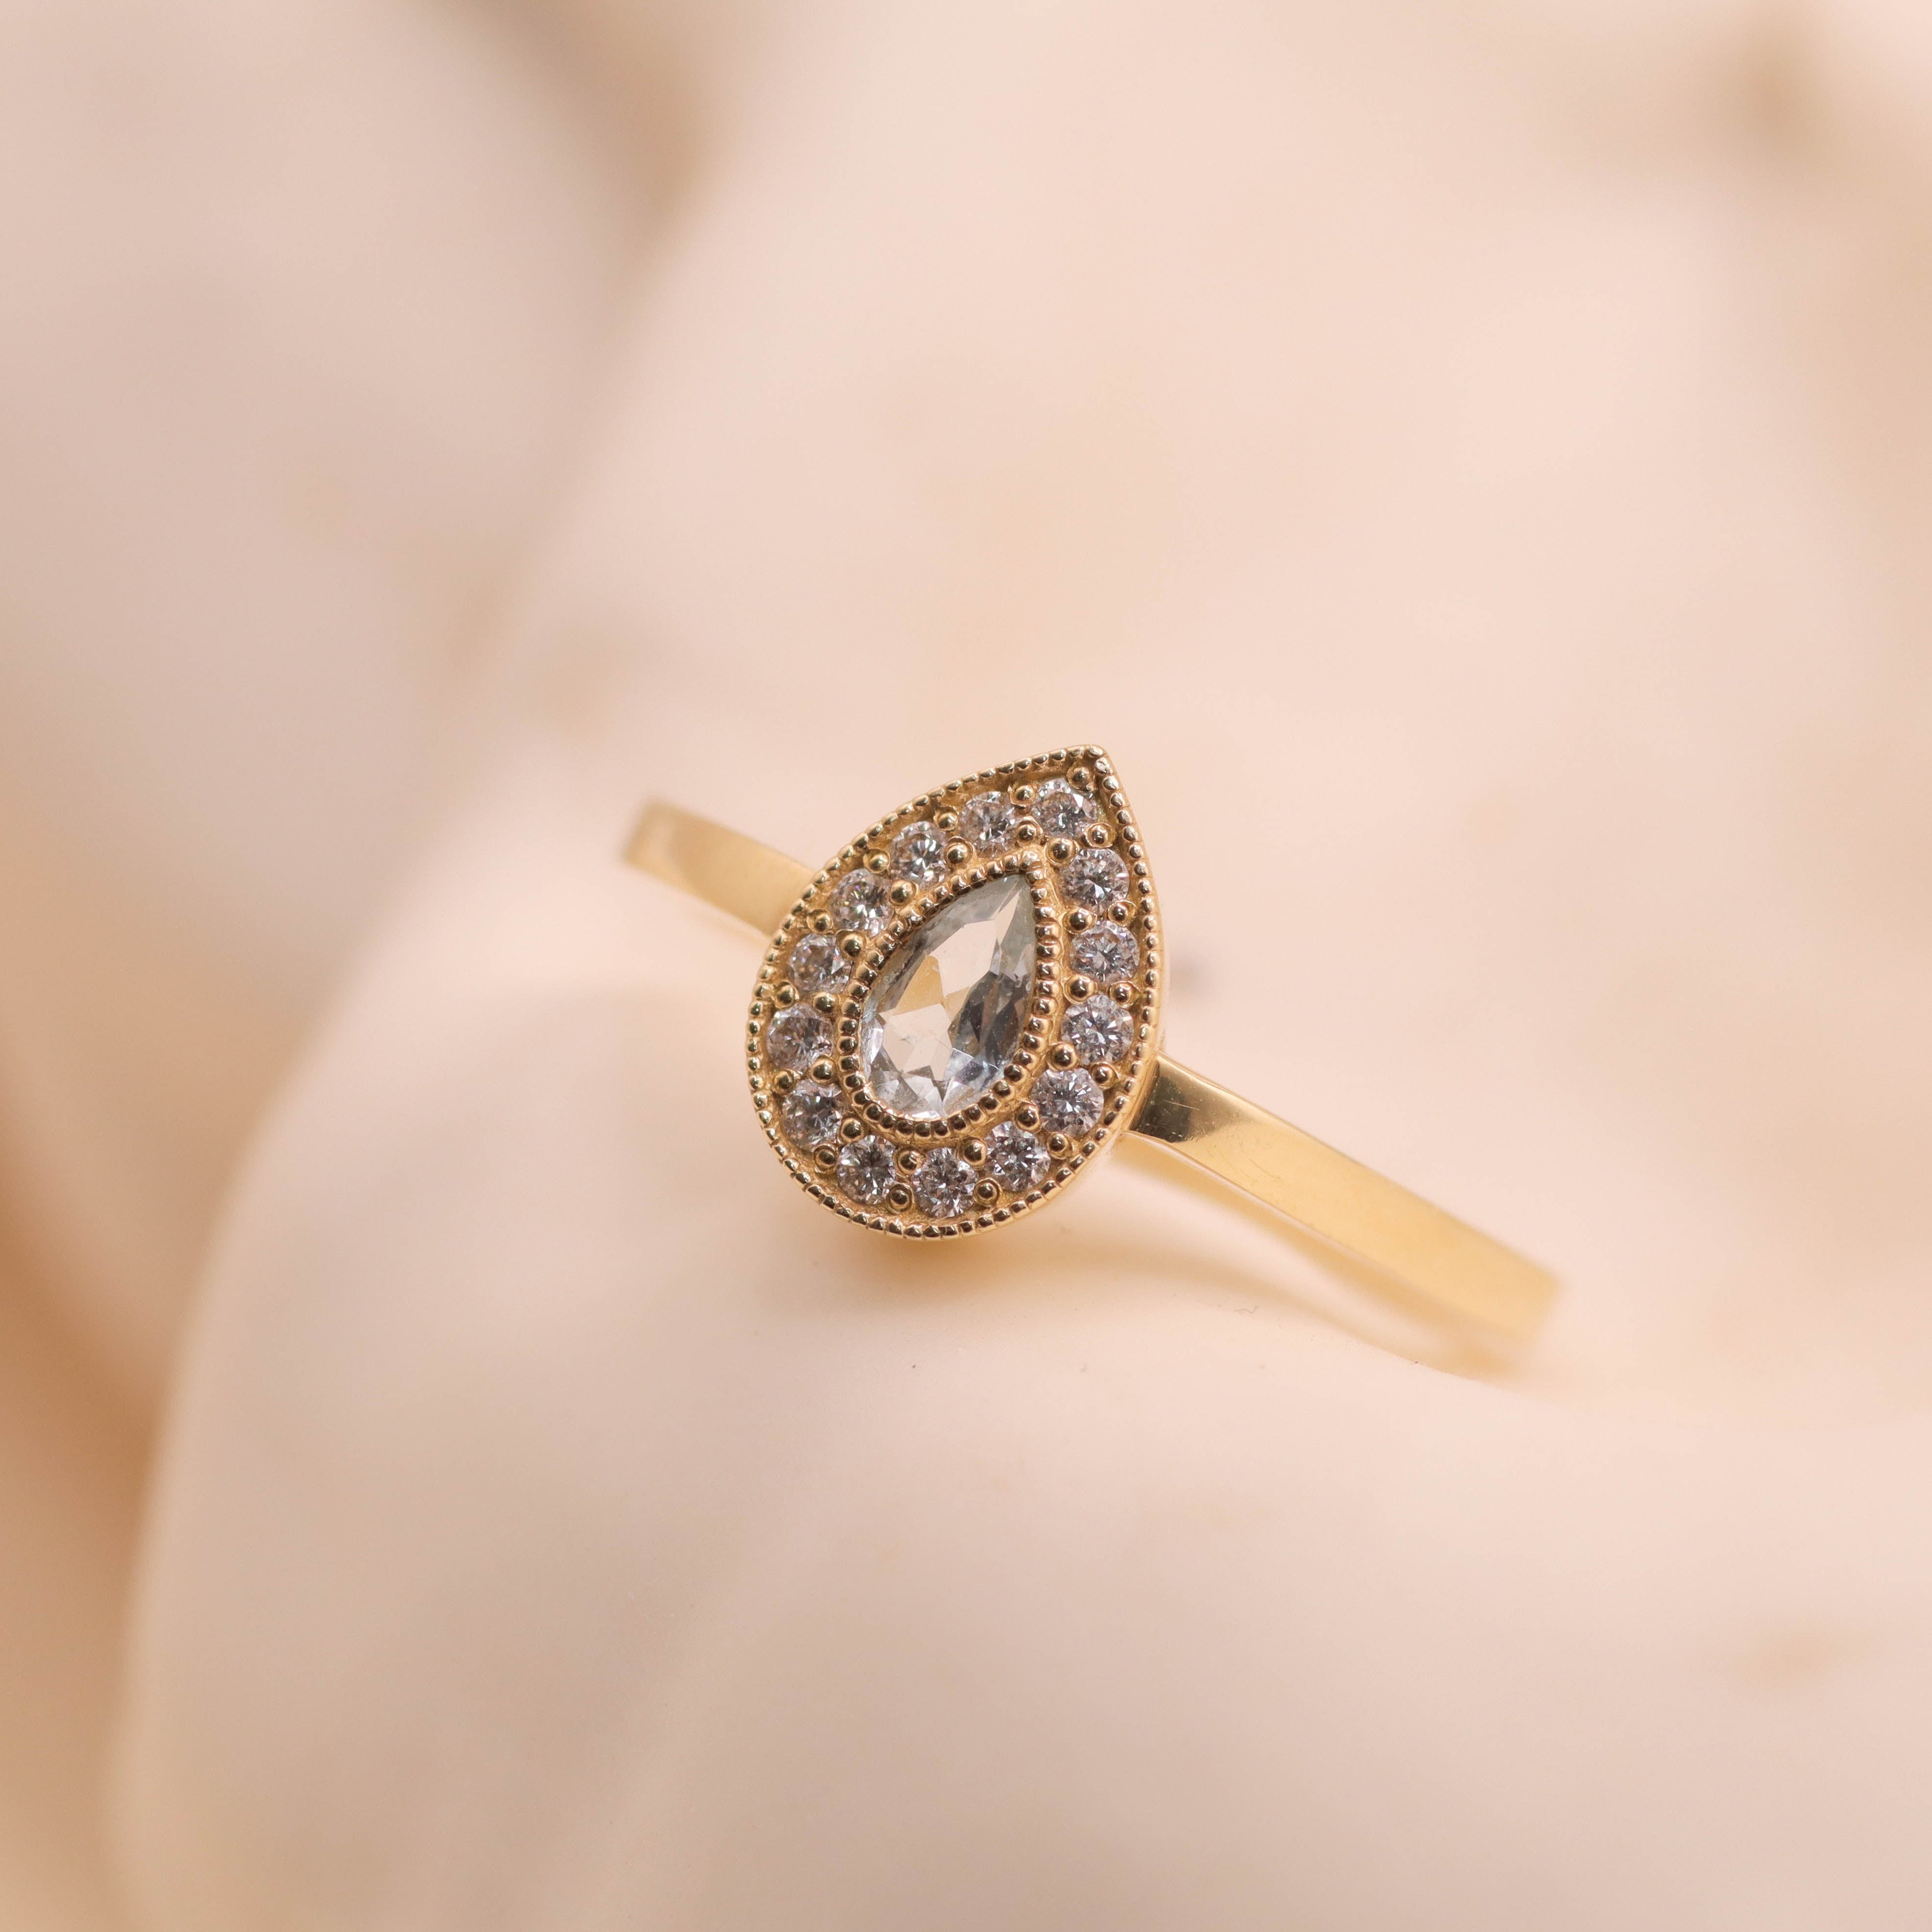 Luna Gold Ring With Aquamarine